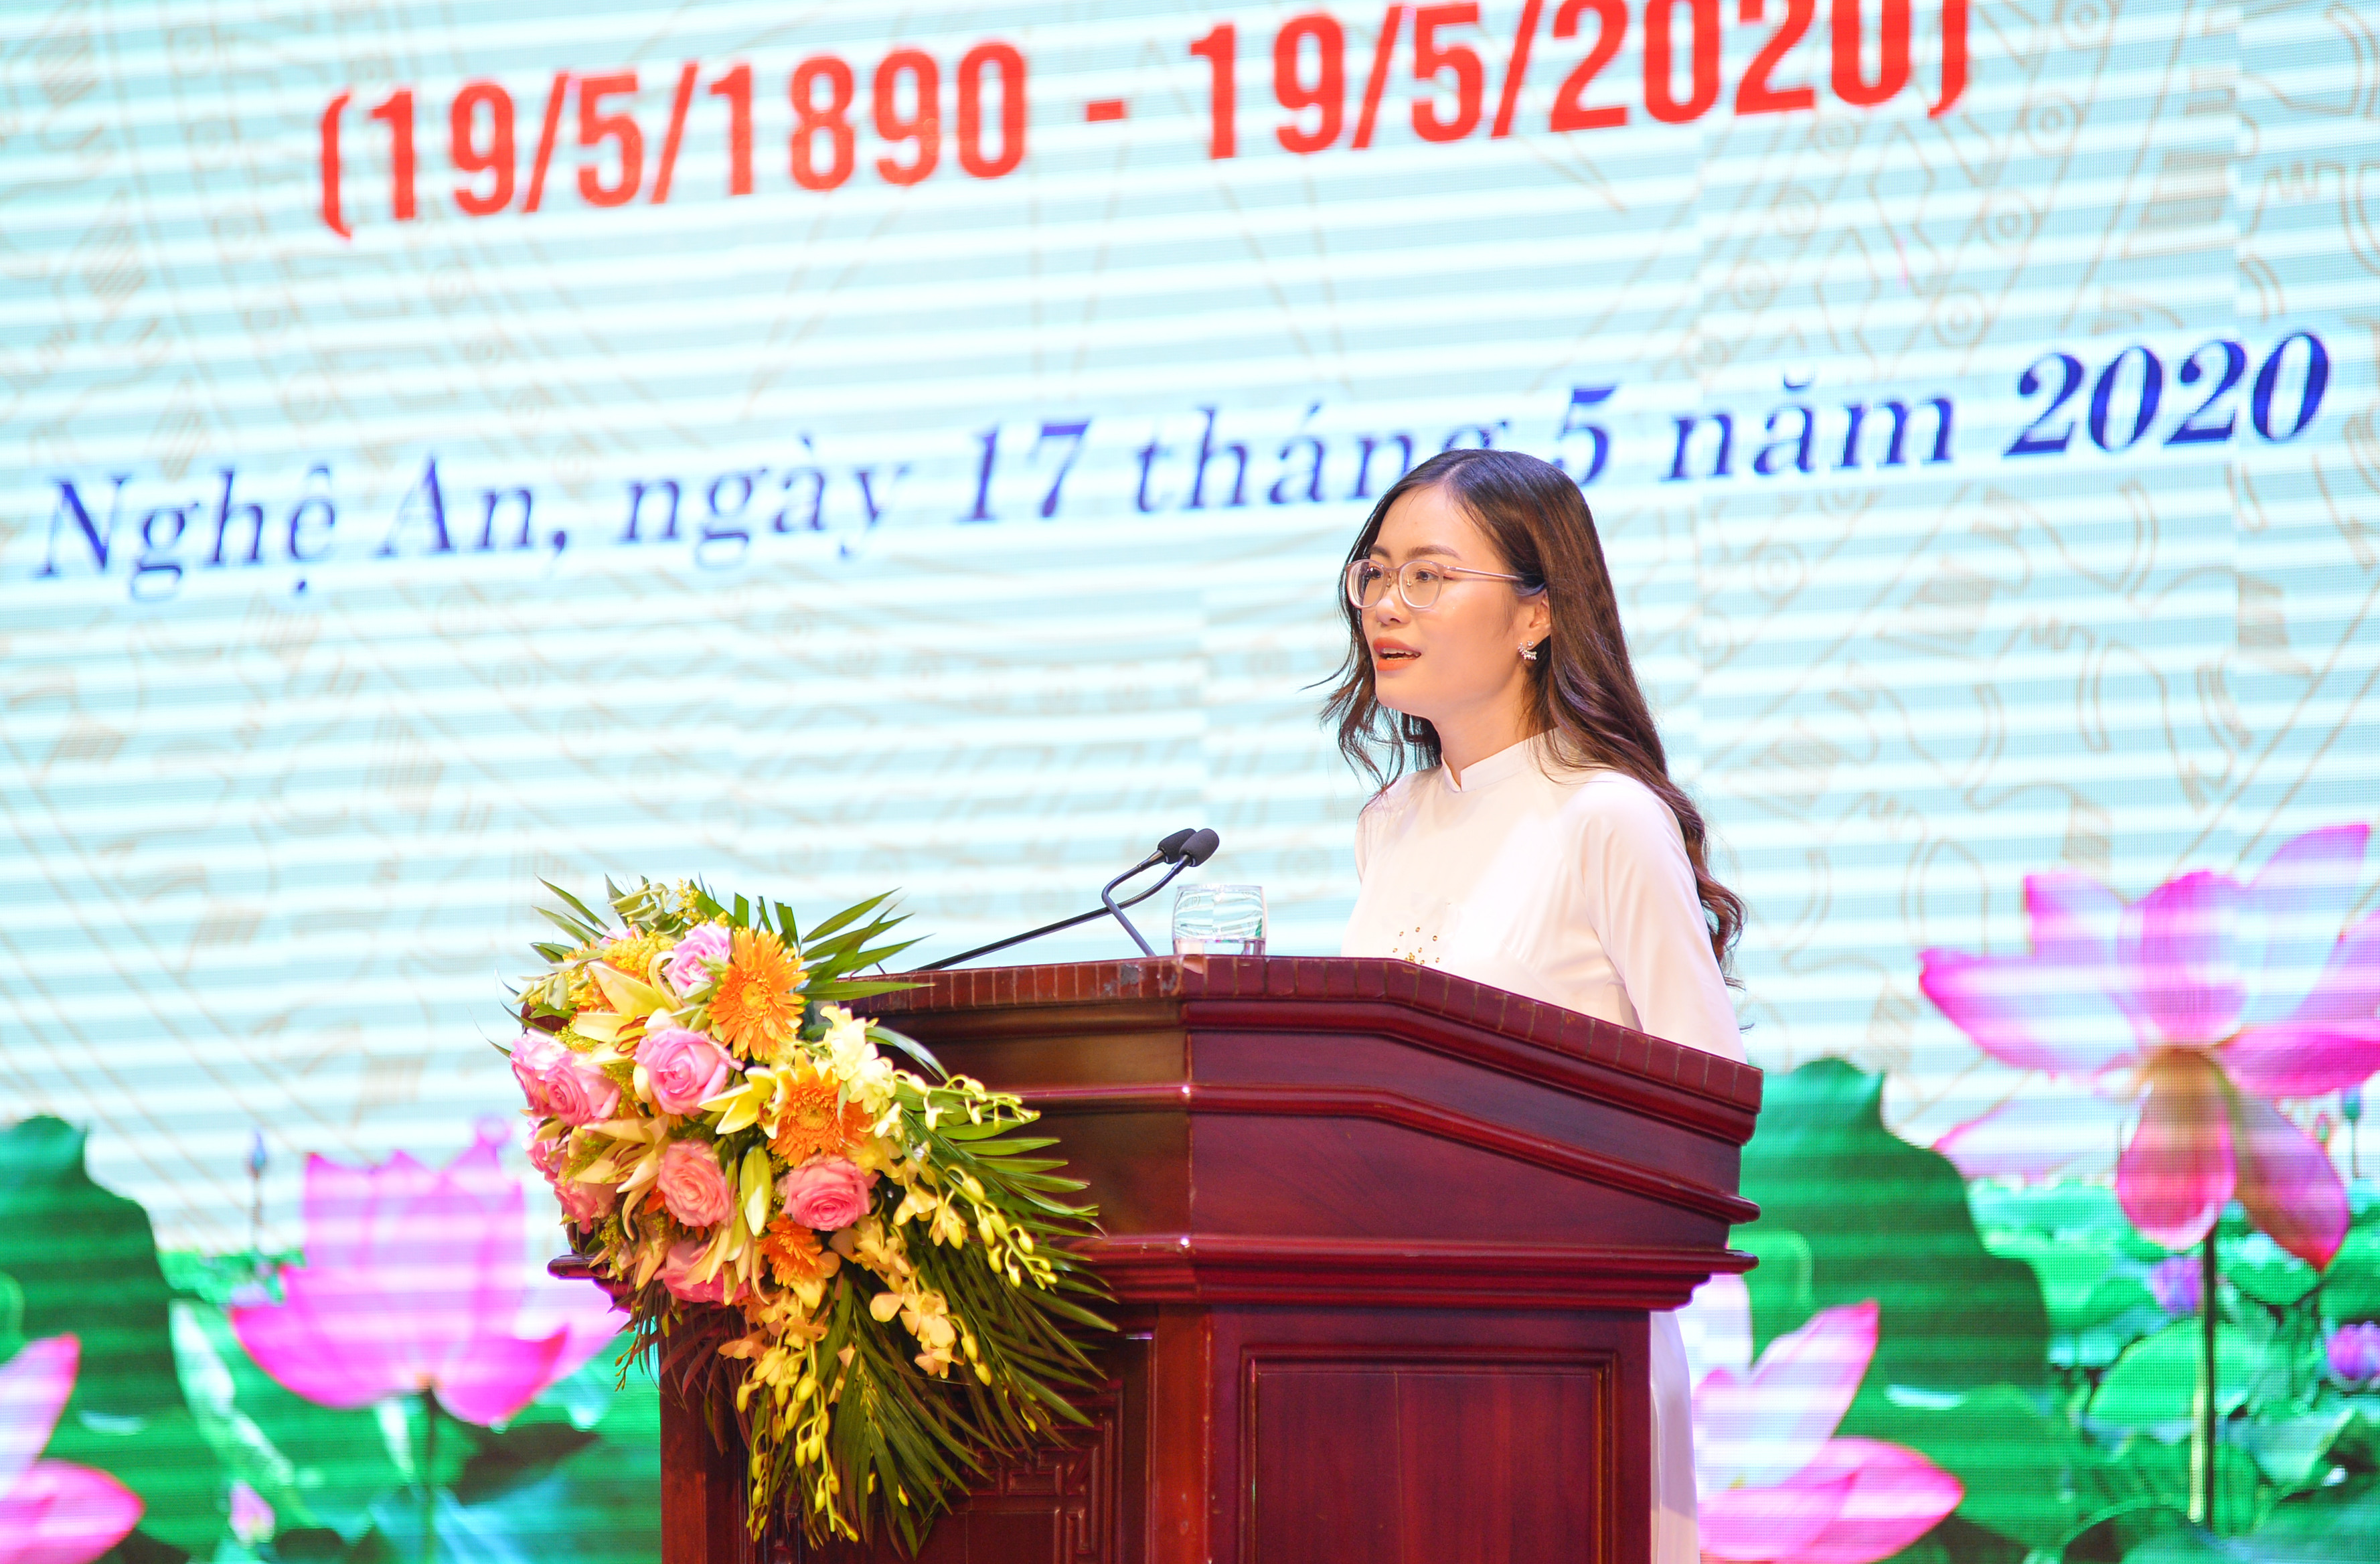 Phan Thị Quỳnh Trang